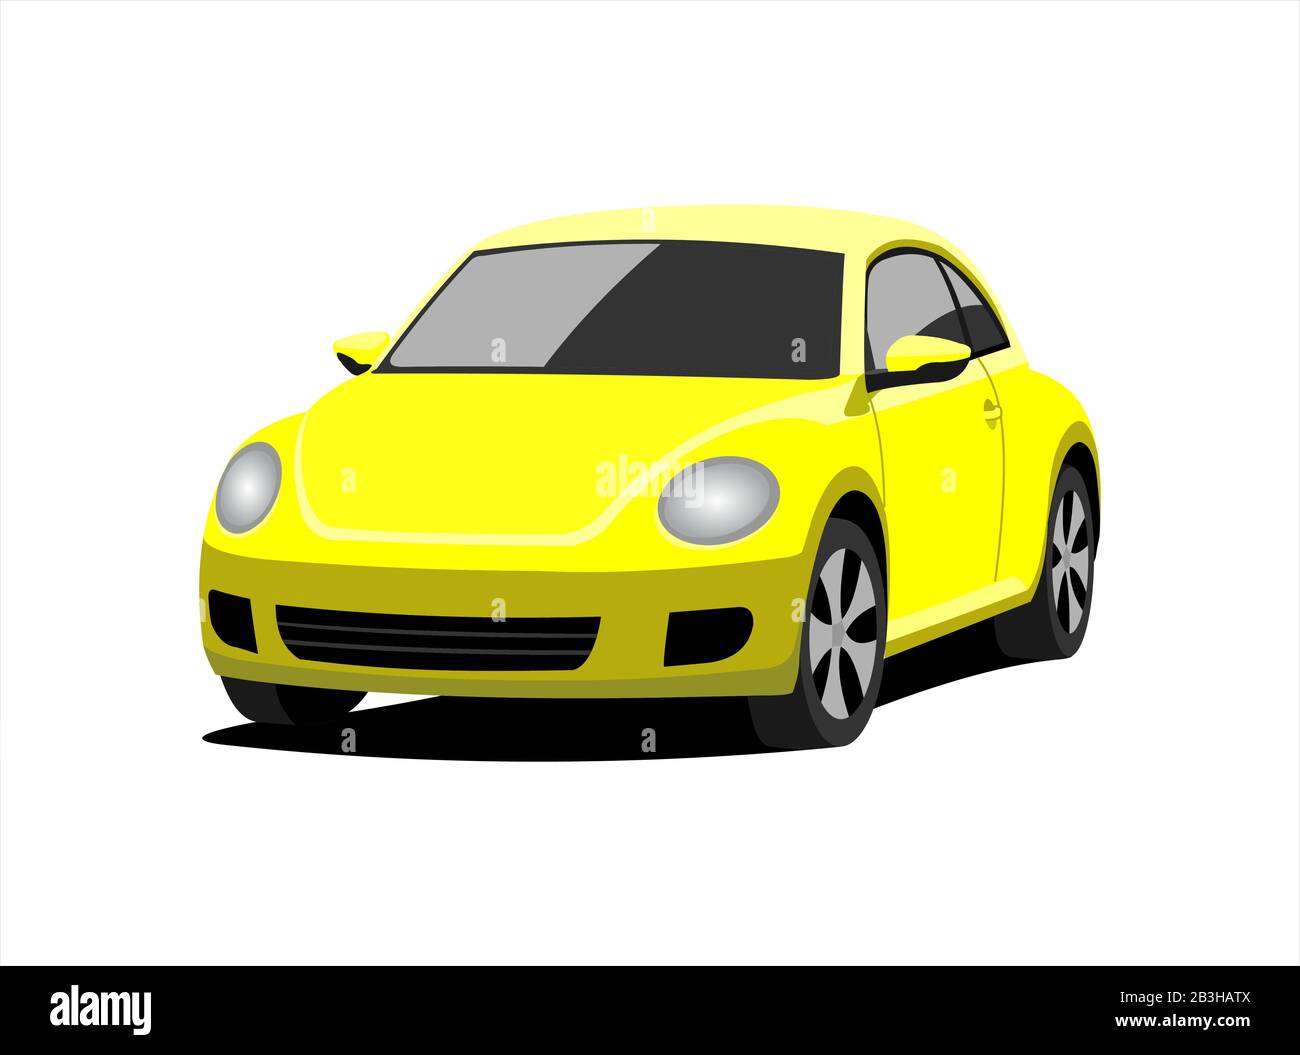 Kleines gelbes Auto - Seitenansicht — Redaktionelles Stockfoto © Trimitrius  #83382350